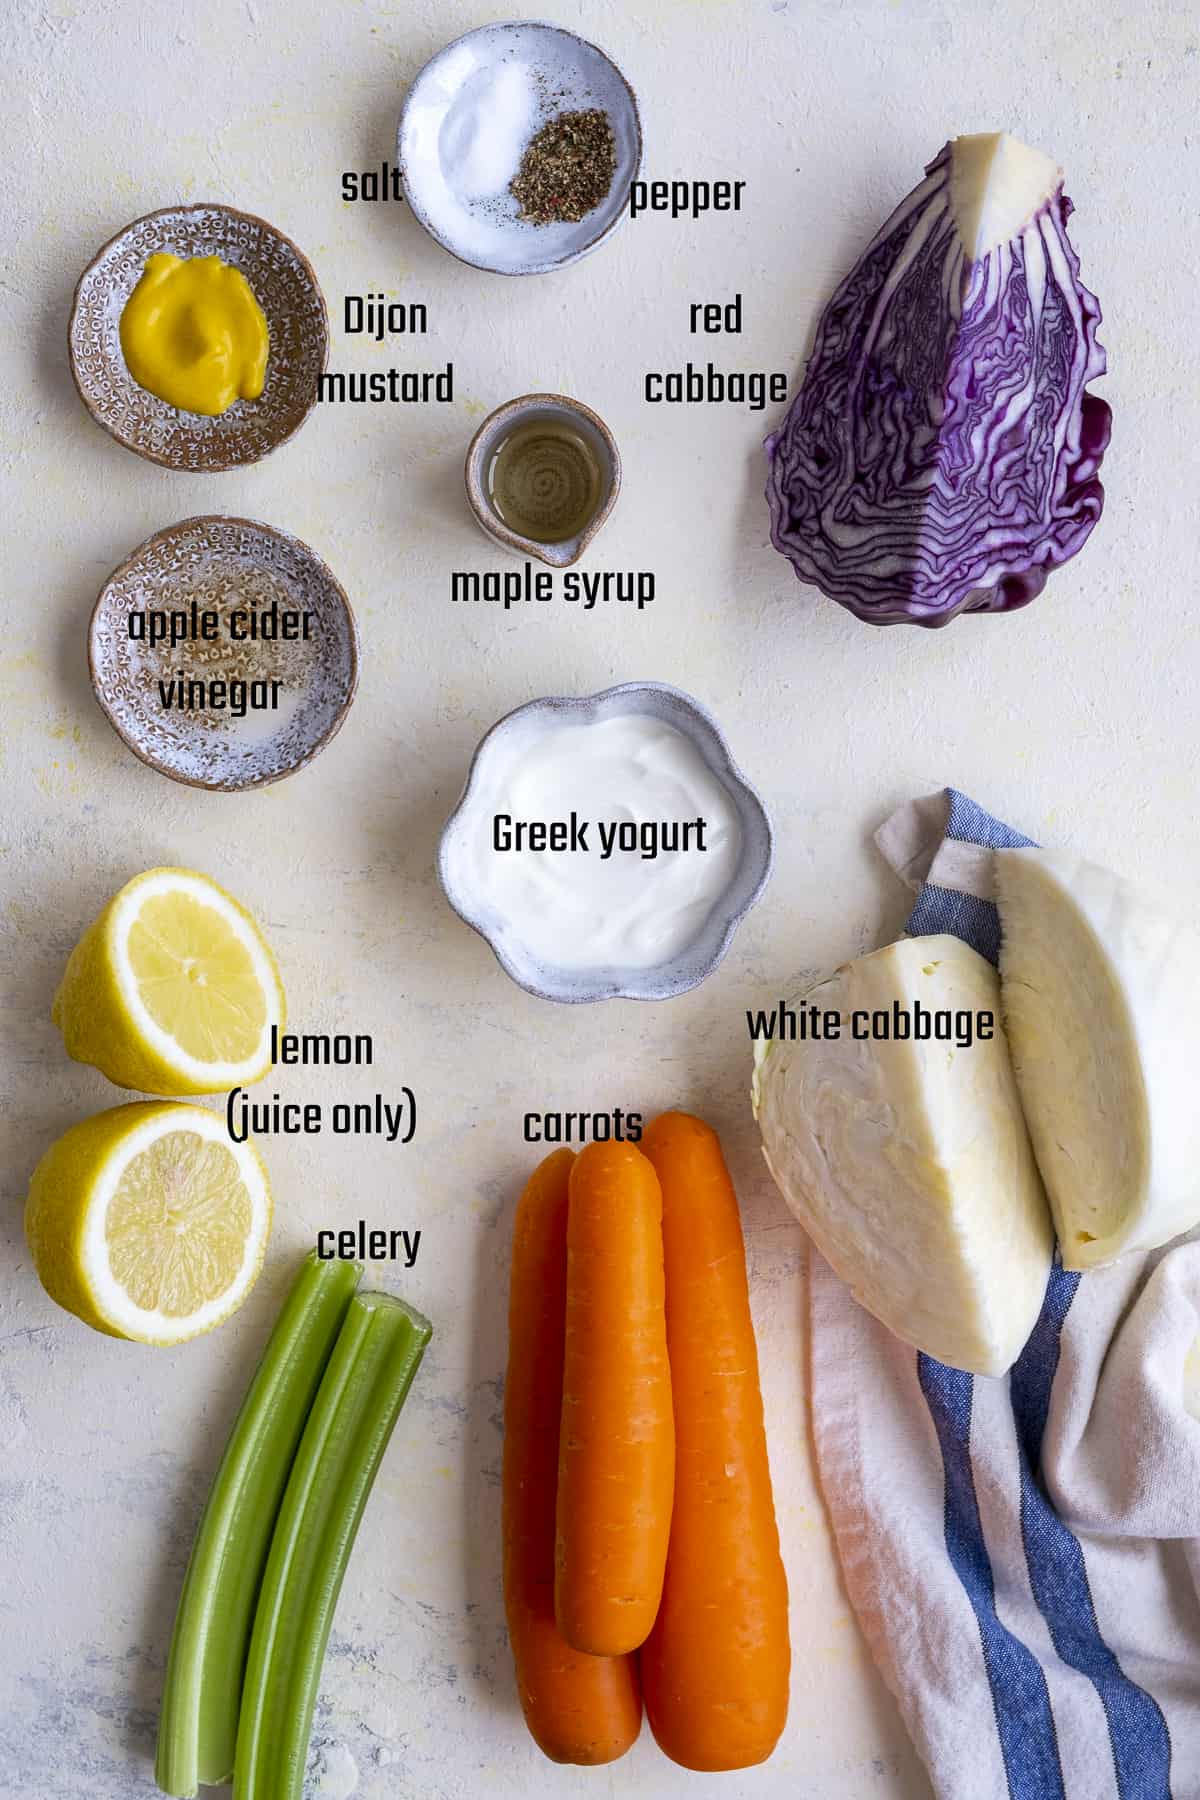 红卷心菜,白菜,胡萝卜,柠檬、芹菜根肋骨,希腊酸奶,第戎芥末、醋、枫糖,盐和胡椒在光背景。